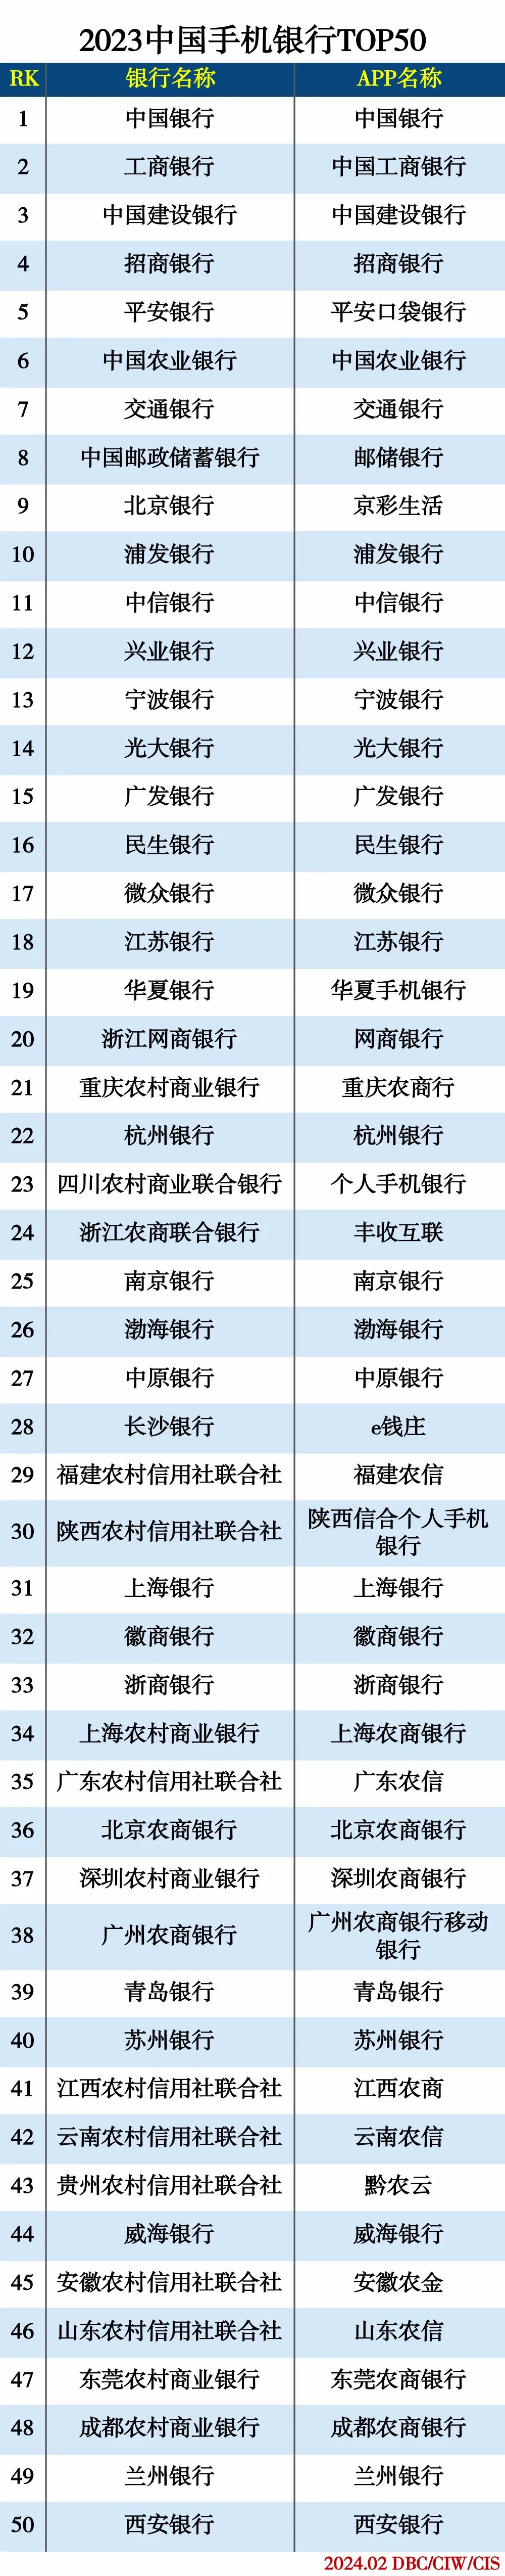 2023中国手机银行TOP50